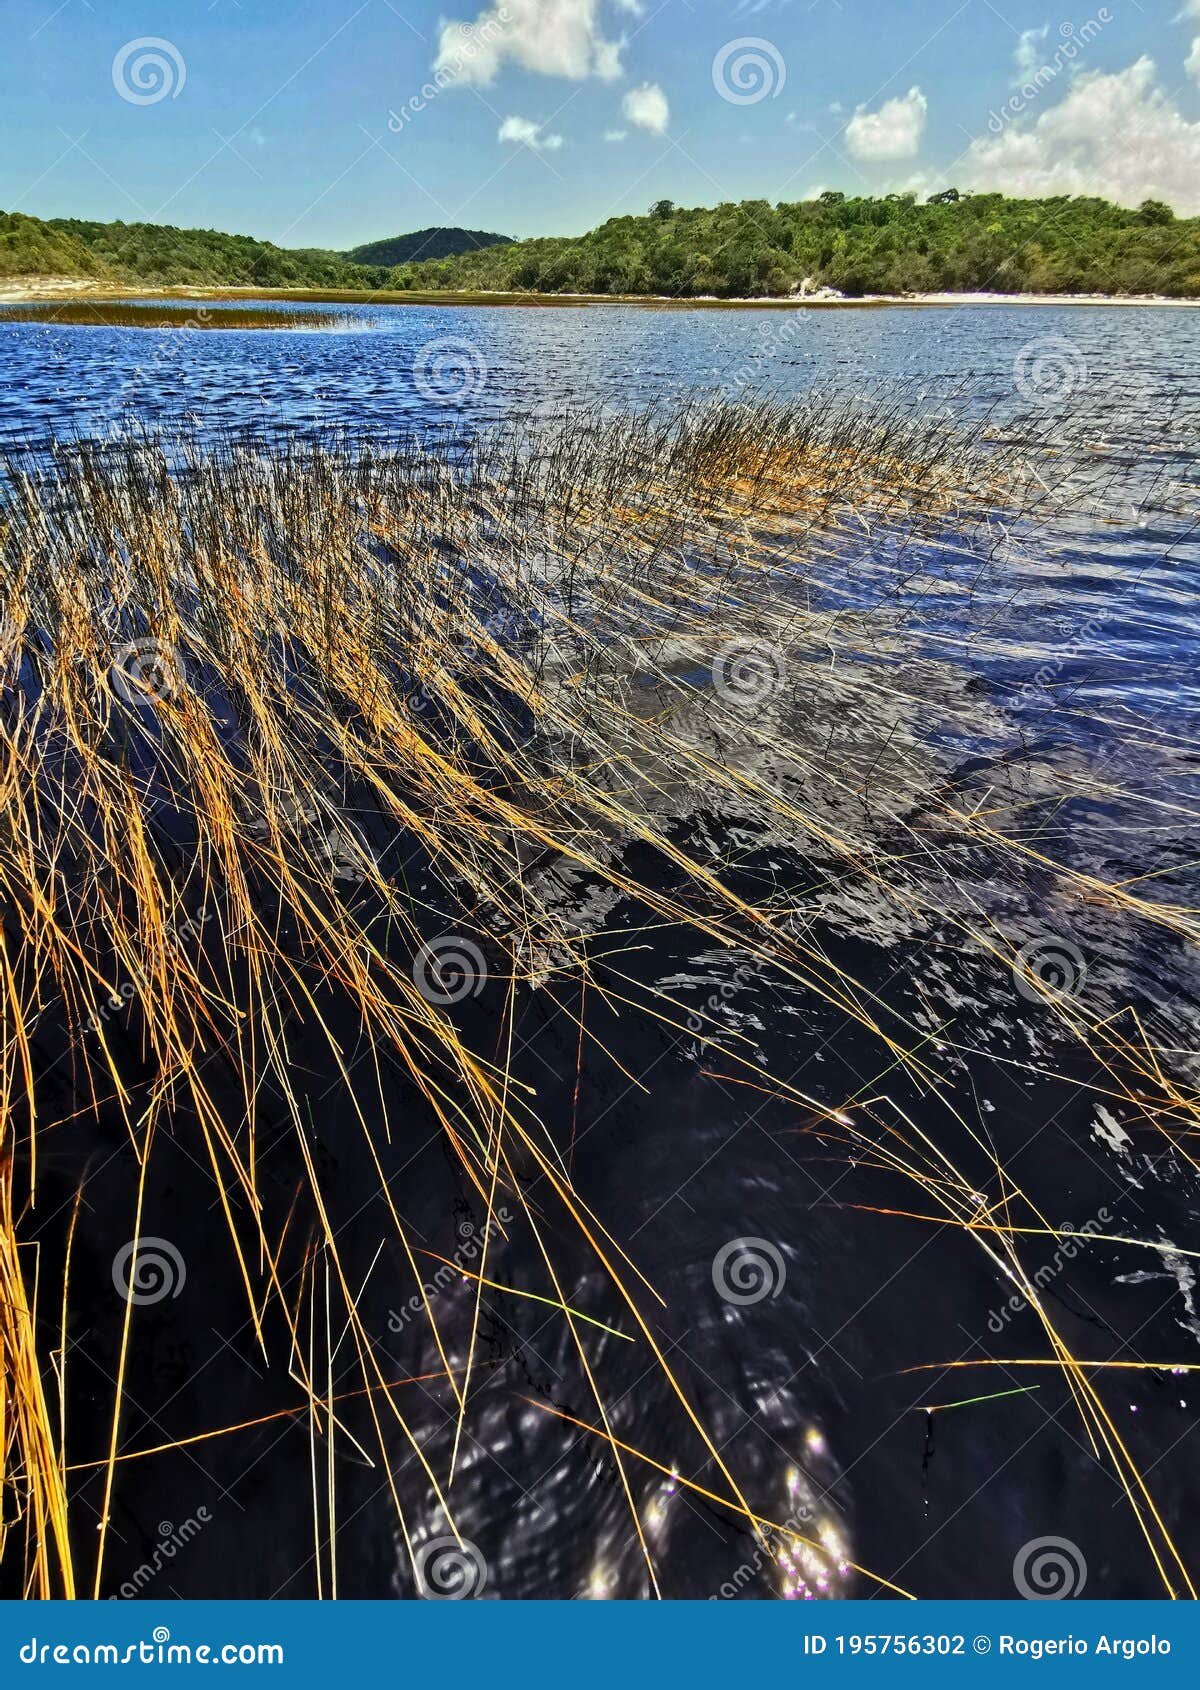 lagoa da coca cola, baia formosa, rio grande do norte, nordeste, brazil